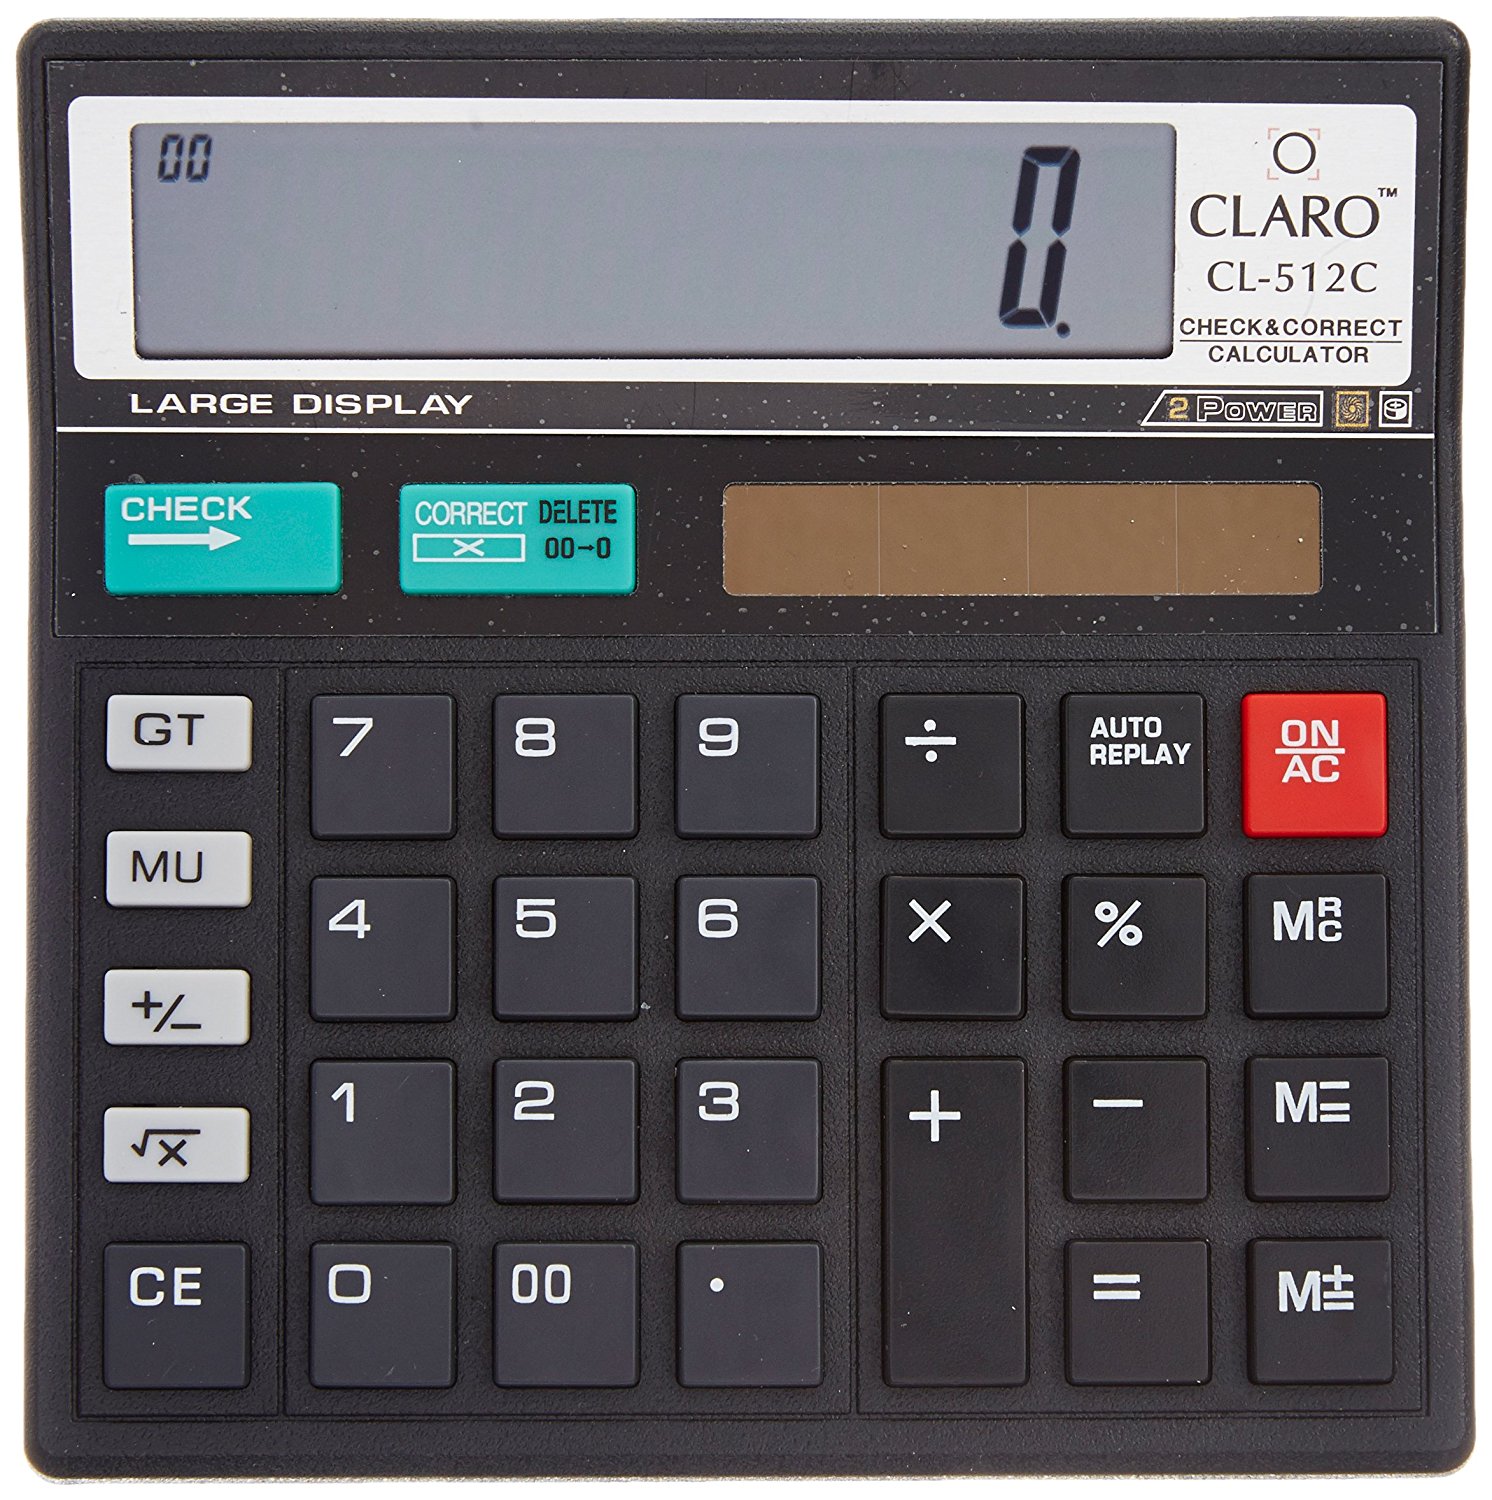 Калькулятор 1800. Калькулятор Electronic calculator. Калькулятор Dolphin Electronic calculator-1800. CT-810 Electronic calculator. Electronic calculator Hodly BL-810a.